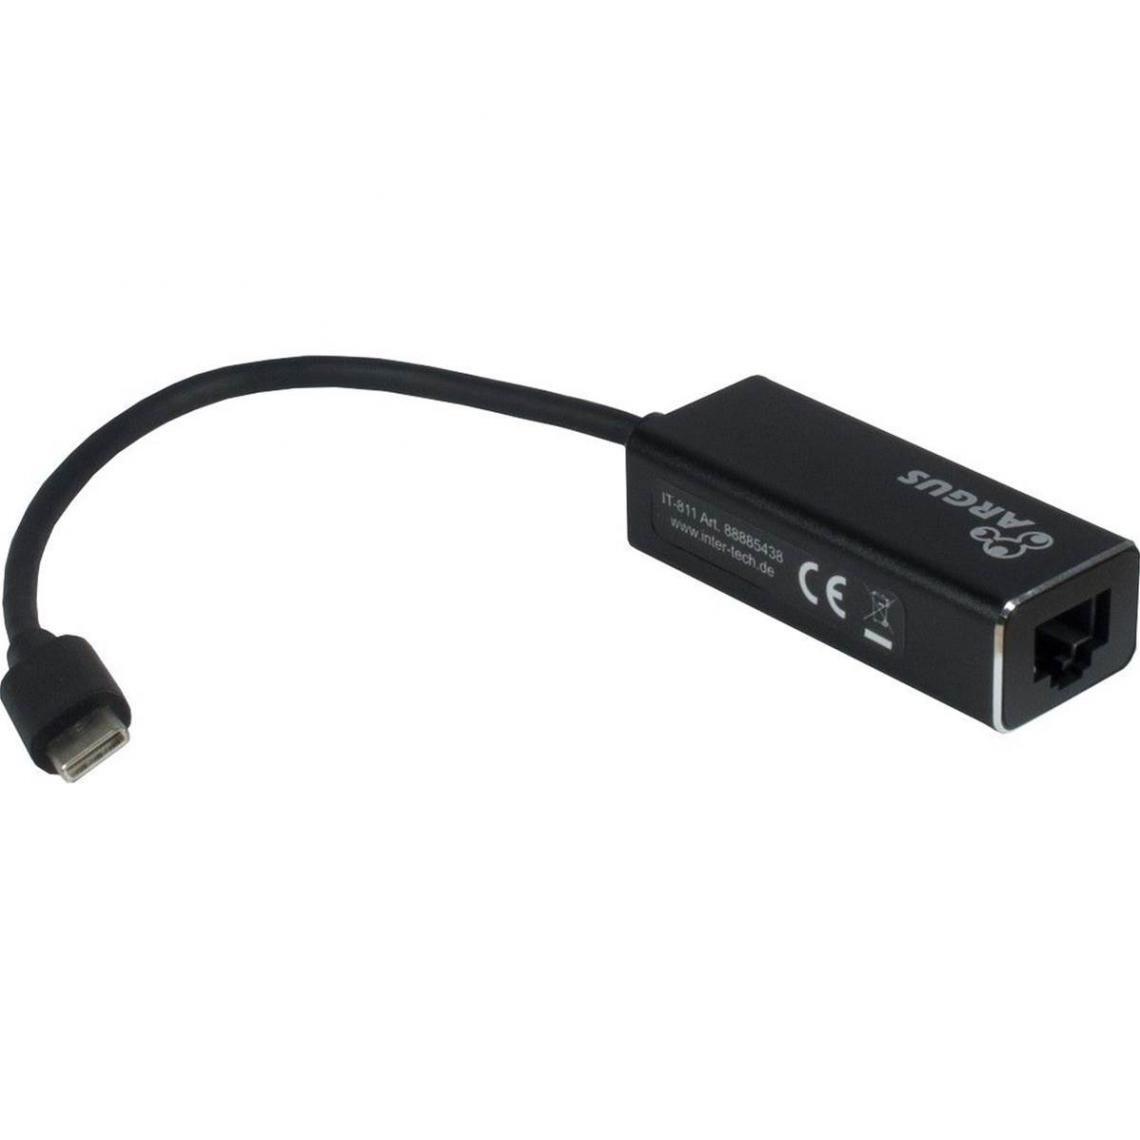 Intertech - INTERTECH Adaptateur USB3.0 type C vers RJ45 Gigabit LAN IT-811 ARGUS - Carte réseau